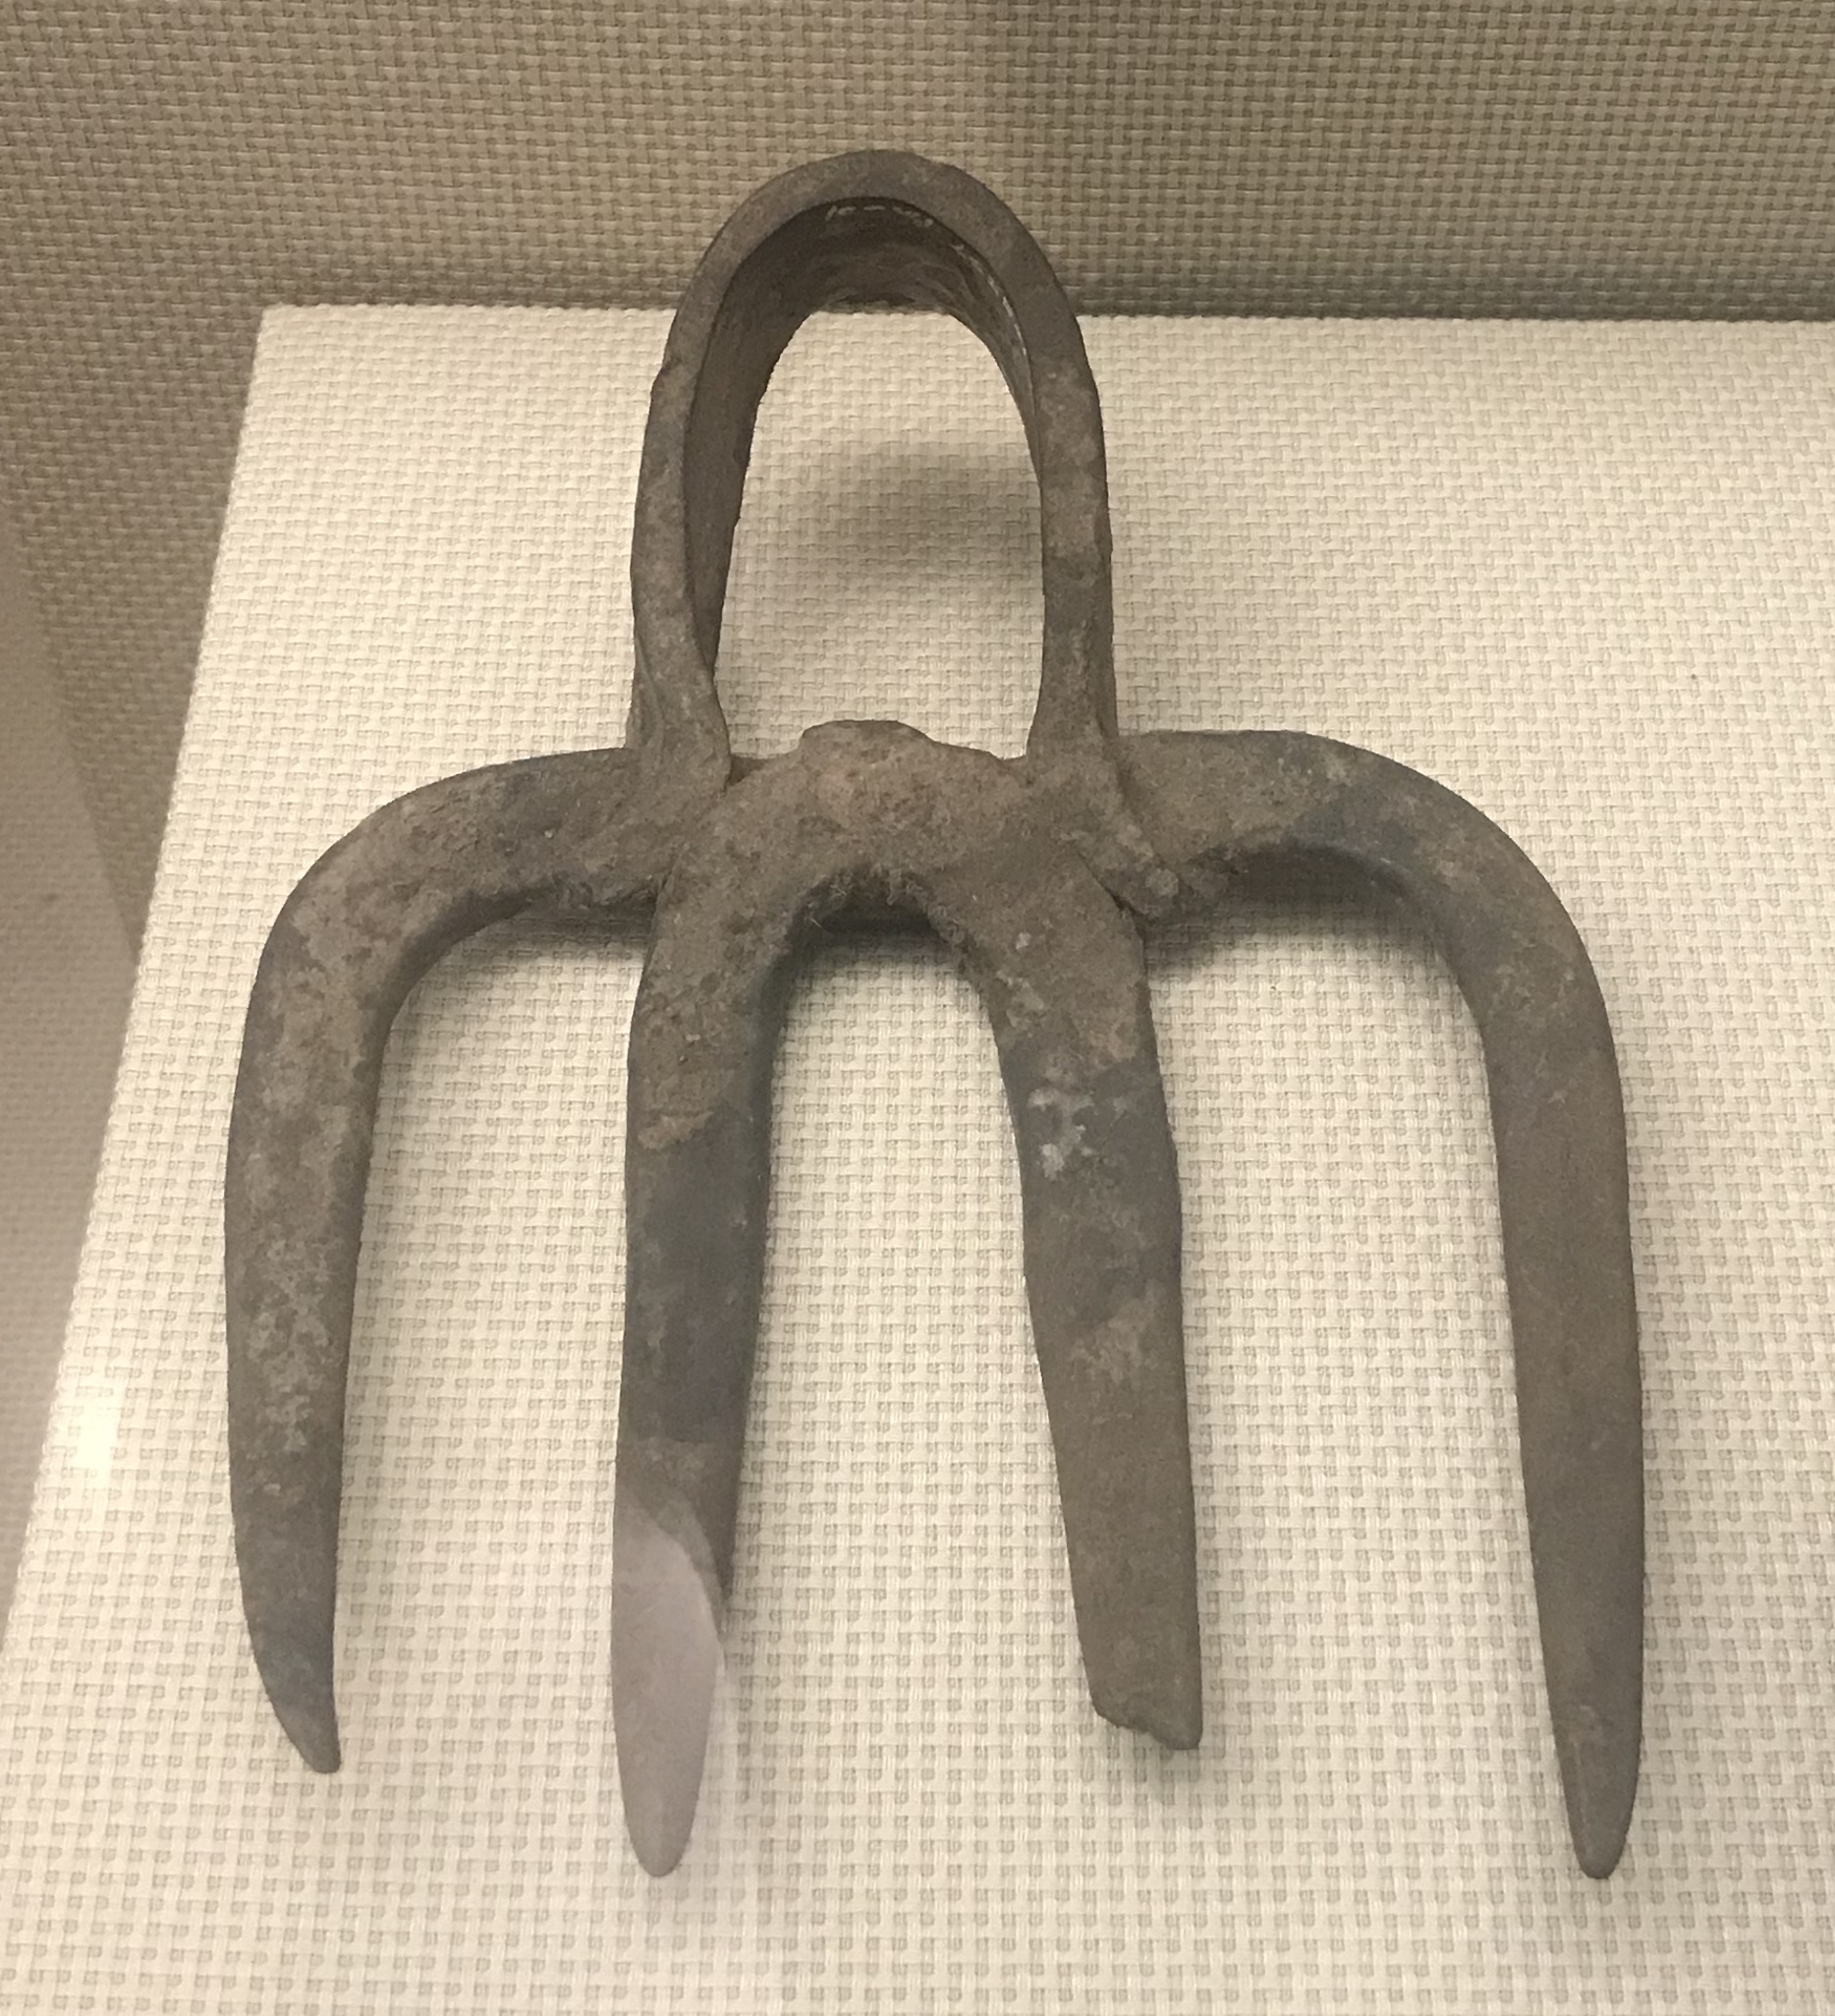 四歯鉄耙-彜族工具-四川民族文物館-四川博物館-成都